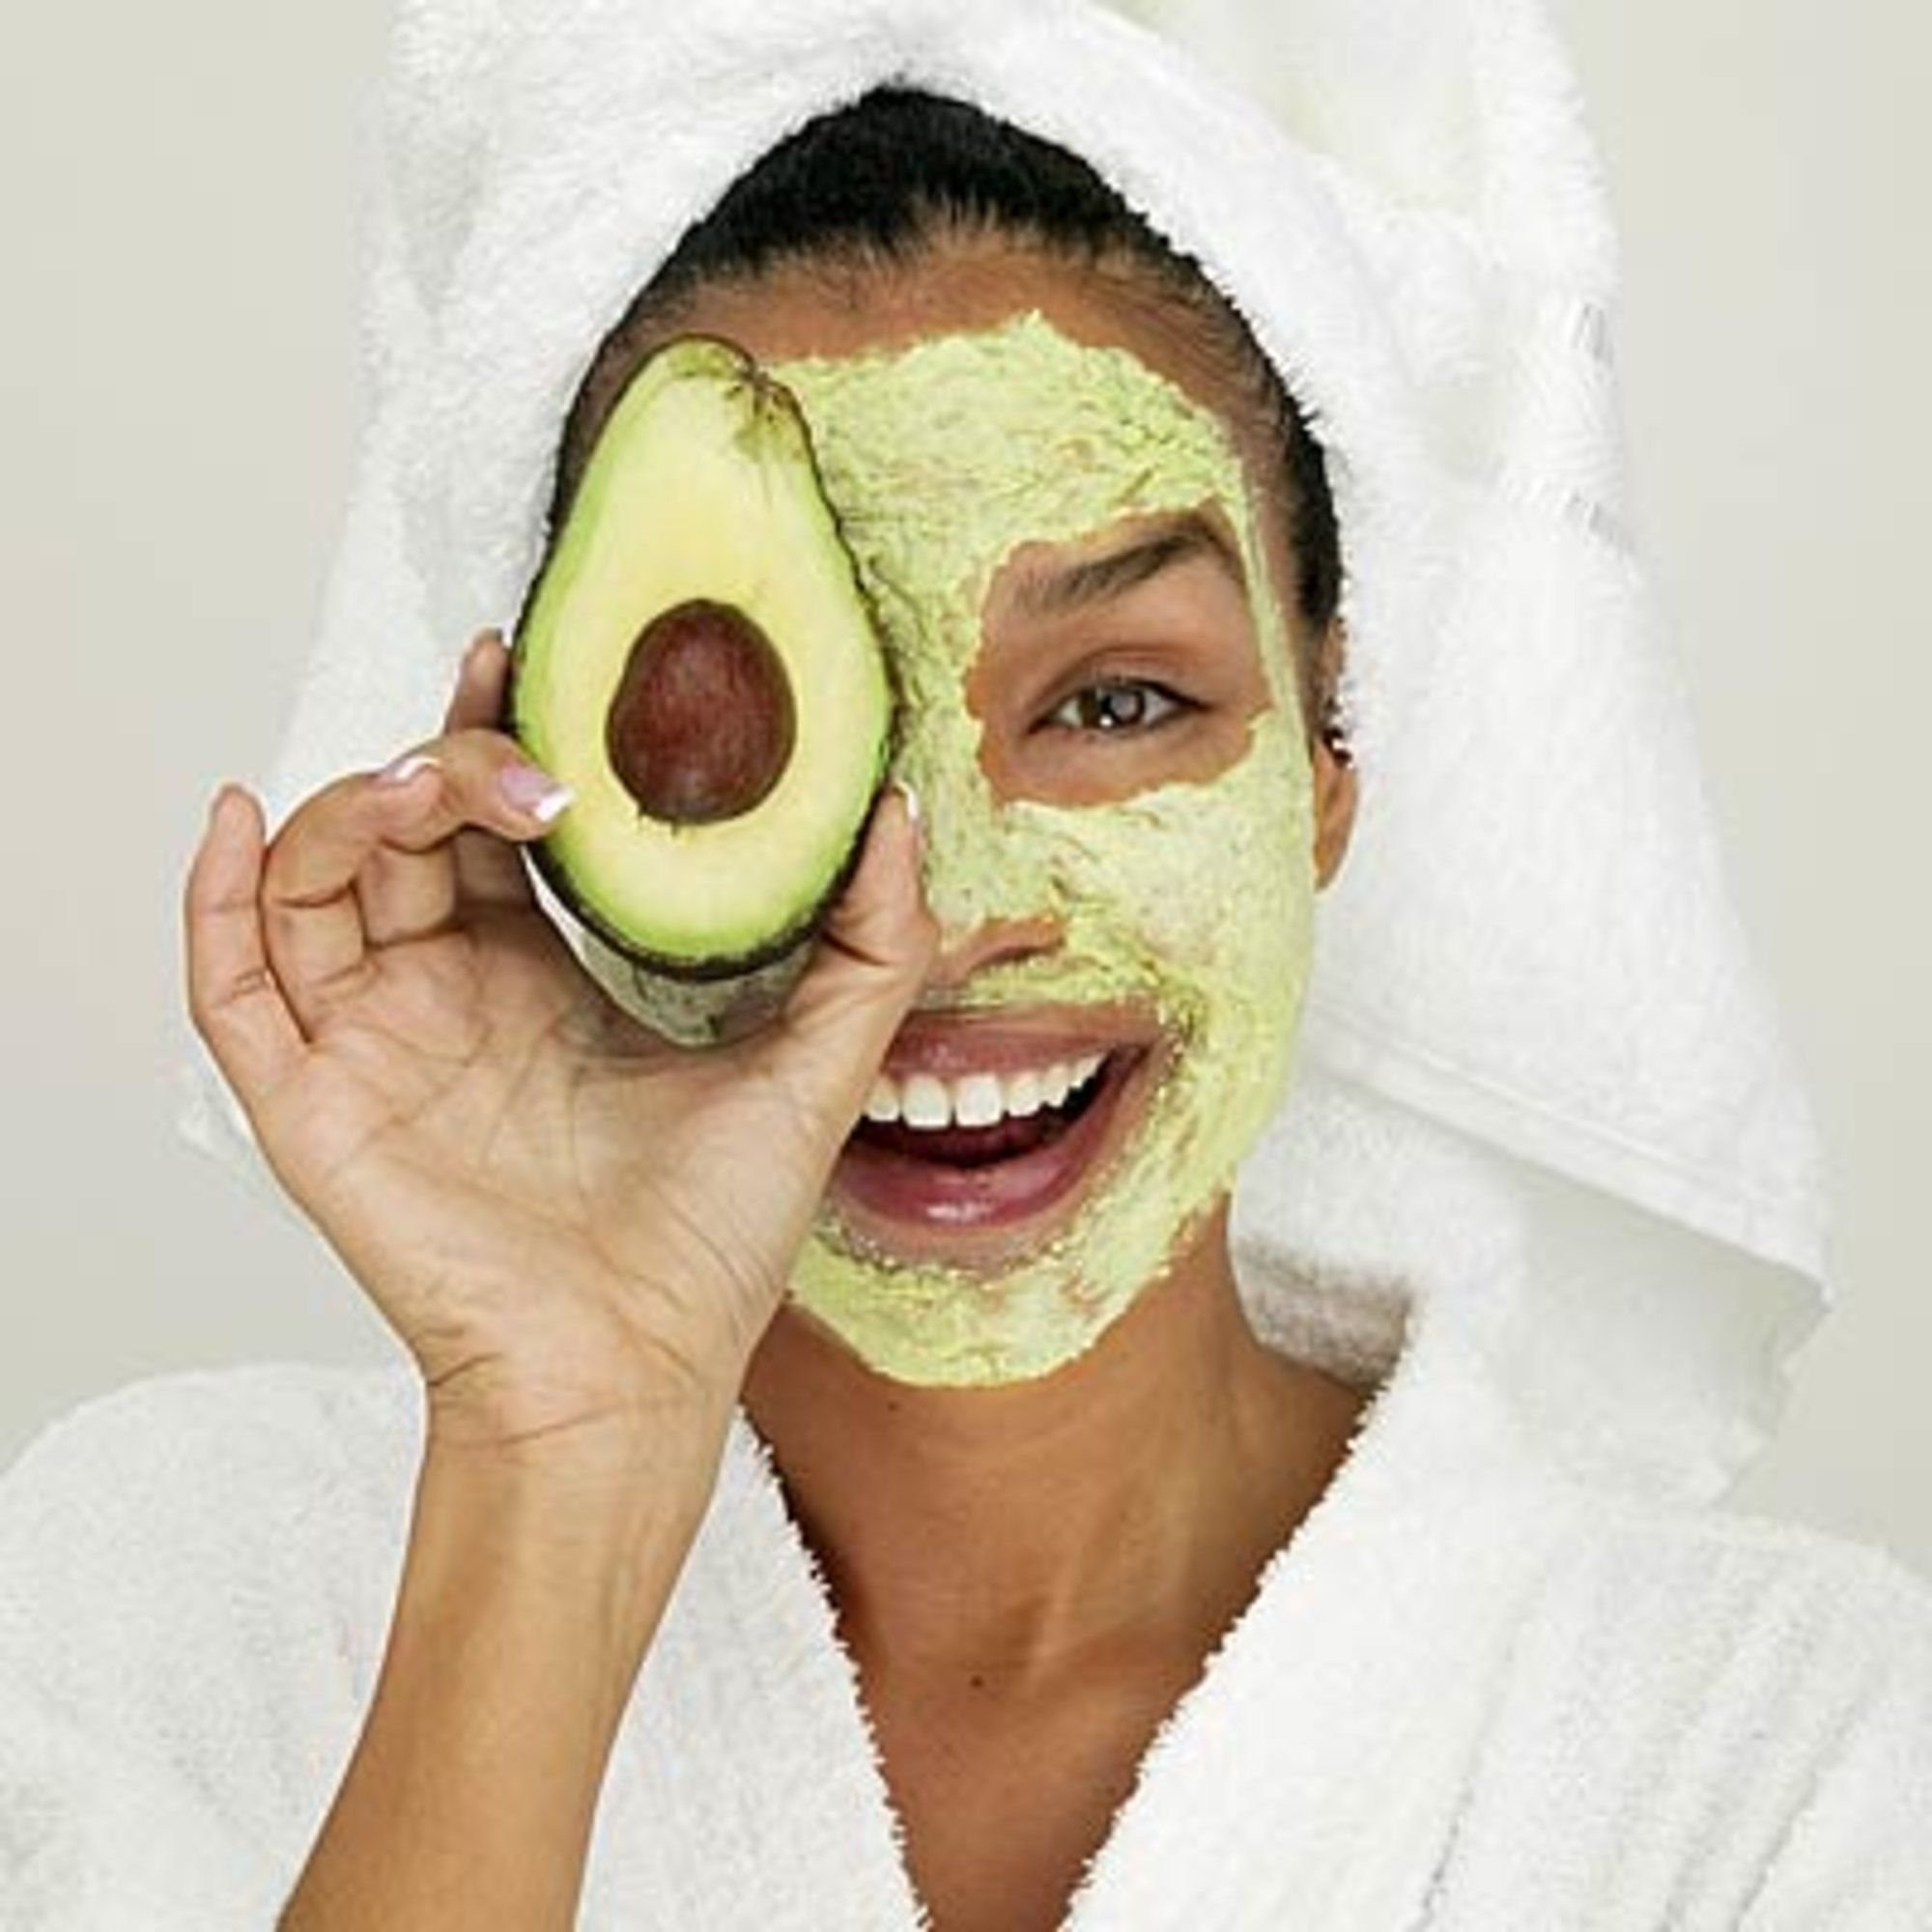 Чем помогают маски для лица. Avocado маска для лица. М̆̈ӑ̈с̆̈к̆̈й̈ д̆̈л̆̈я̆̈ л̆̈й̈ц̆̈ӑ̈. Майки лицо.